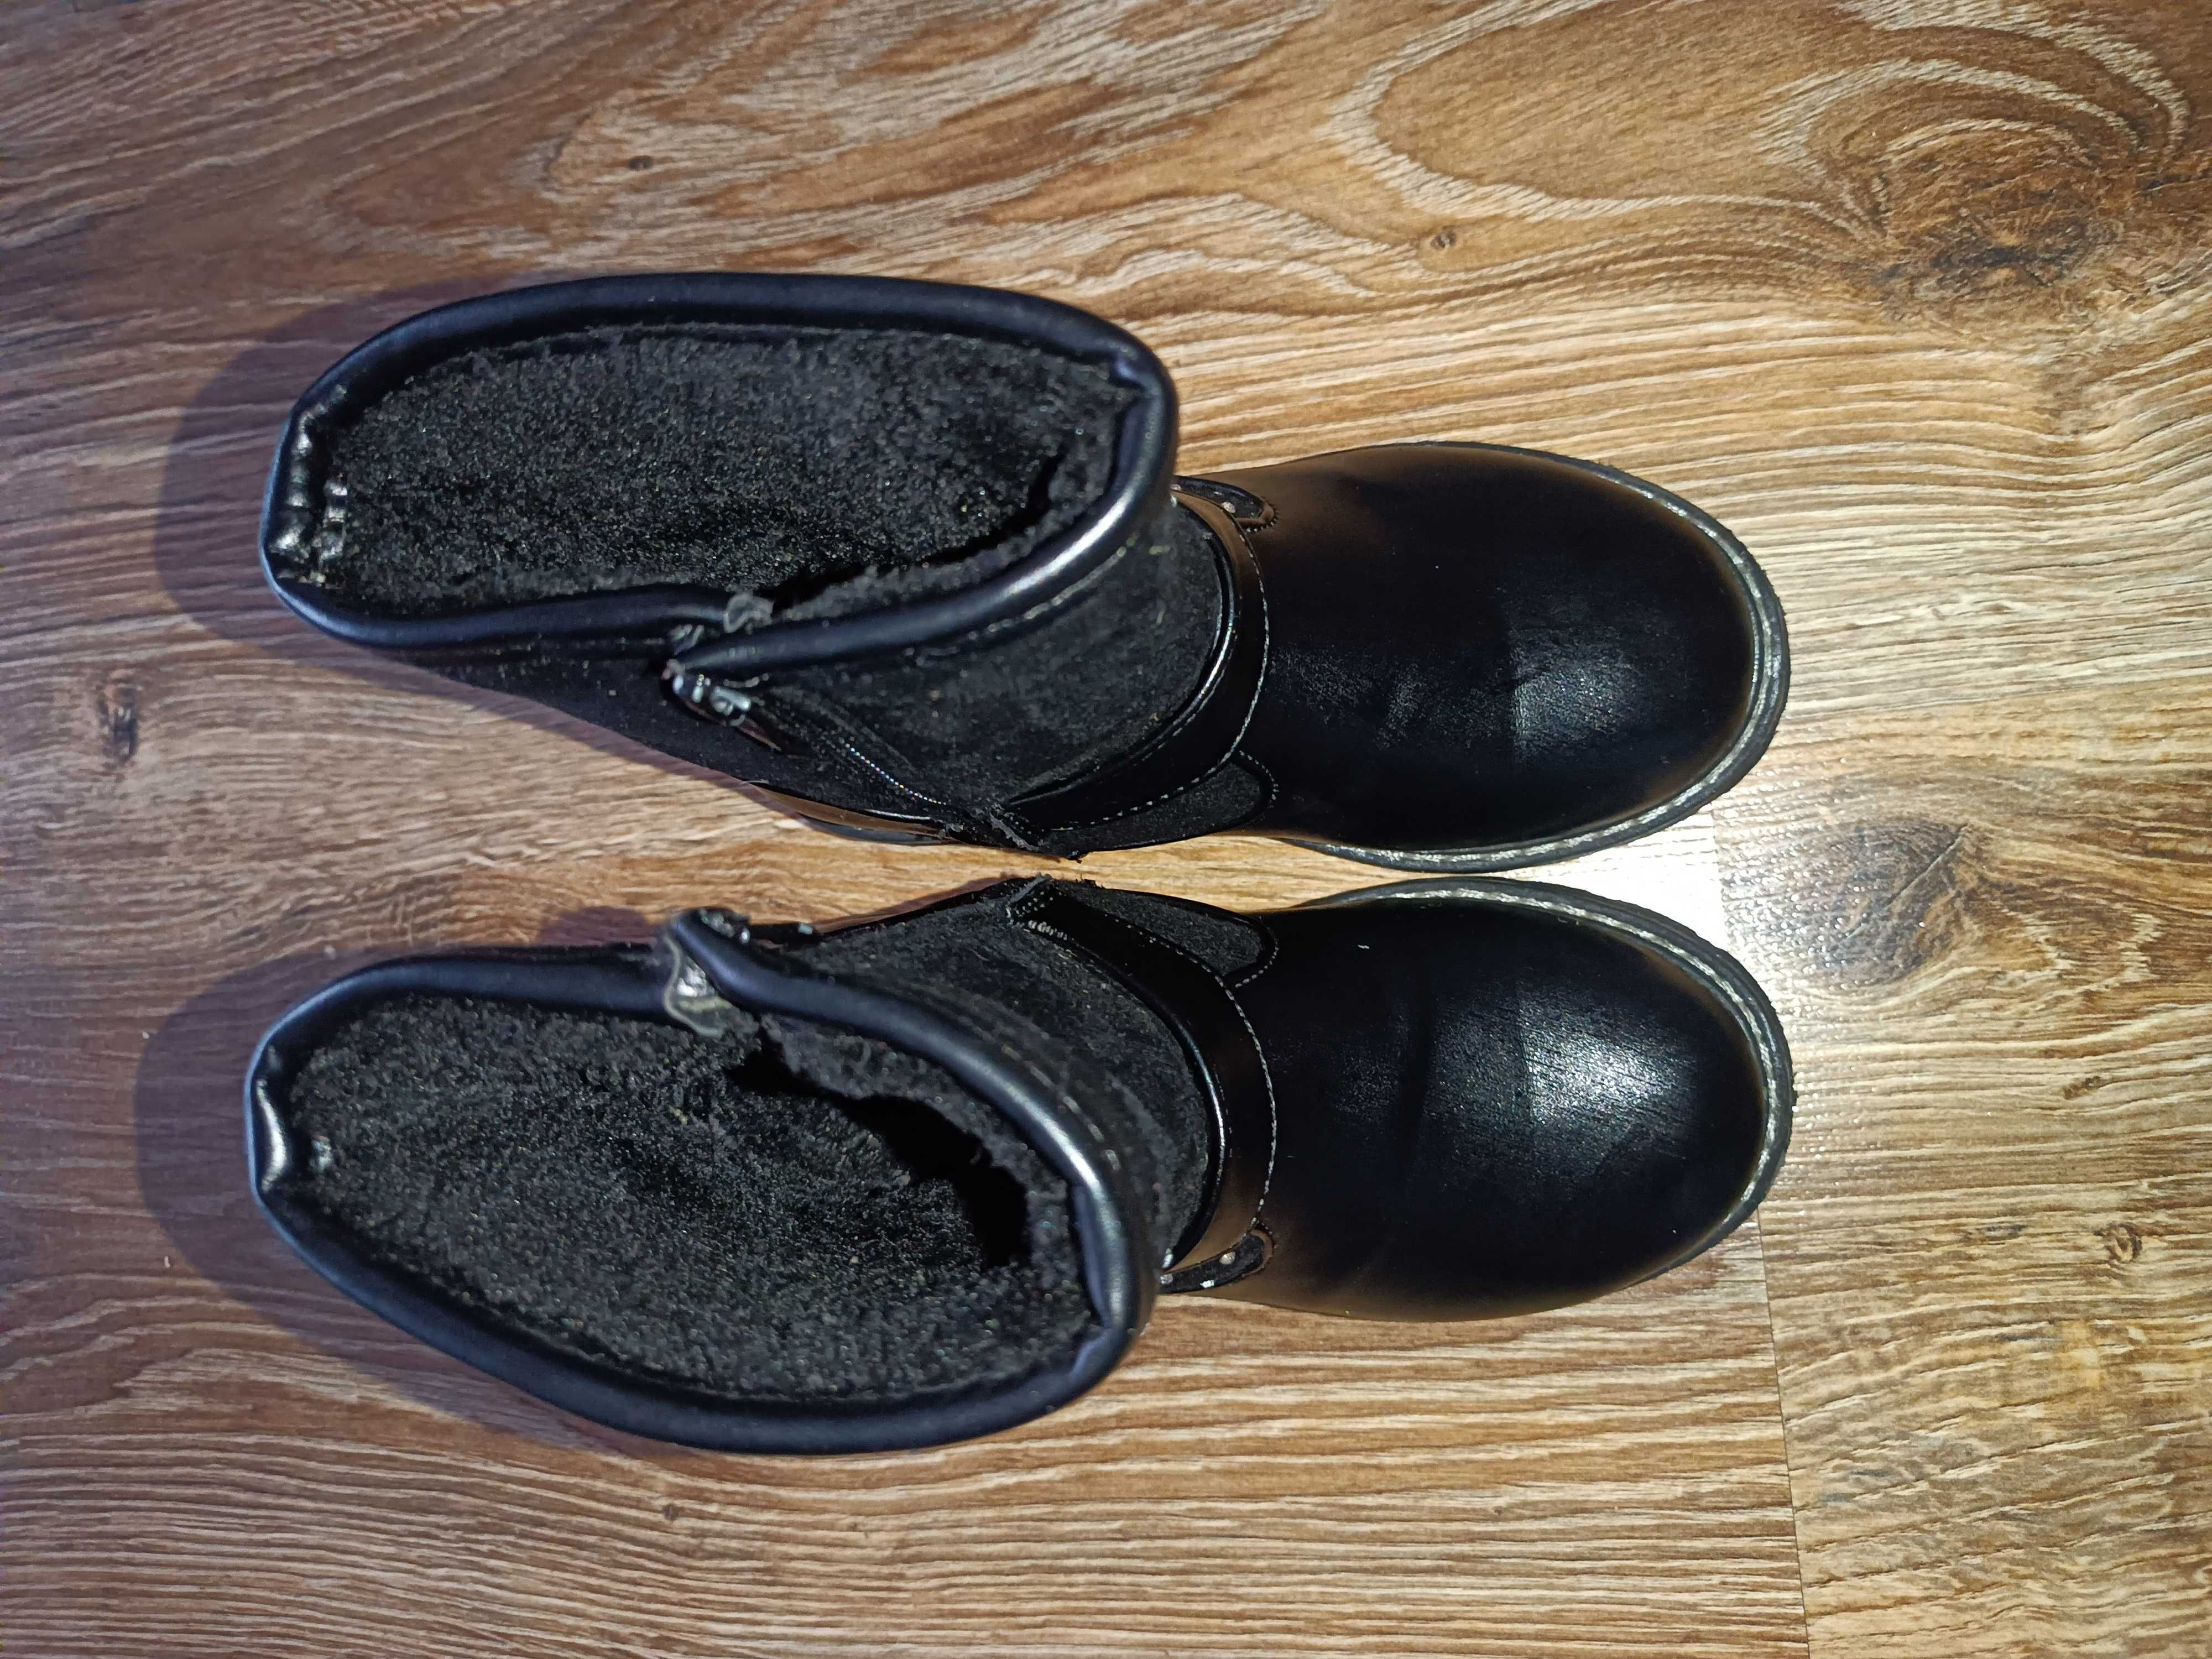 Buty buciki kozaczki ocieplane rozm. 28 wkładka 16,5-17 cm. Jak nowe.